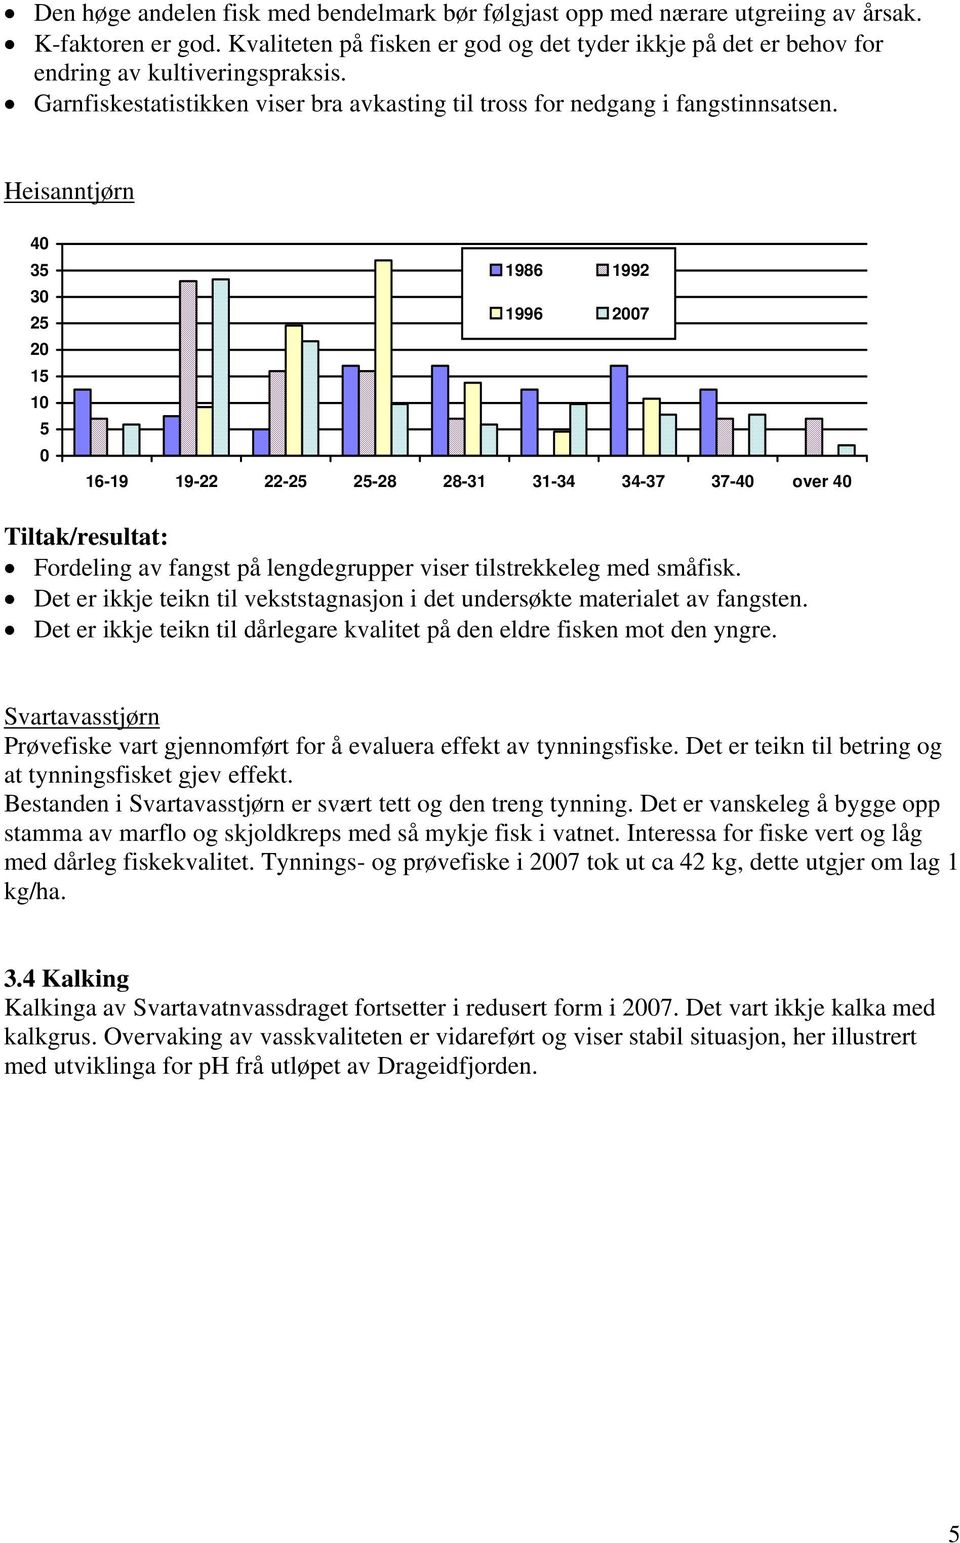 Heisanntjørn 4 3 3 2 2 1 1 1986 1992 1996 27 16-19 19-22 22-2 2-28 28-31 31-34 34-37 37-4 over 4 Tiltak/resultat: Fordeling av fangst på lengdegrupper viser tilstrekkeleg med småfisk.